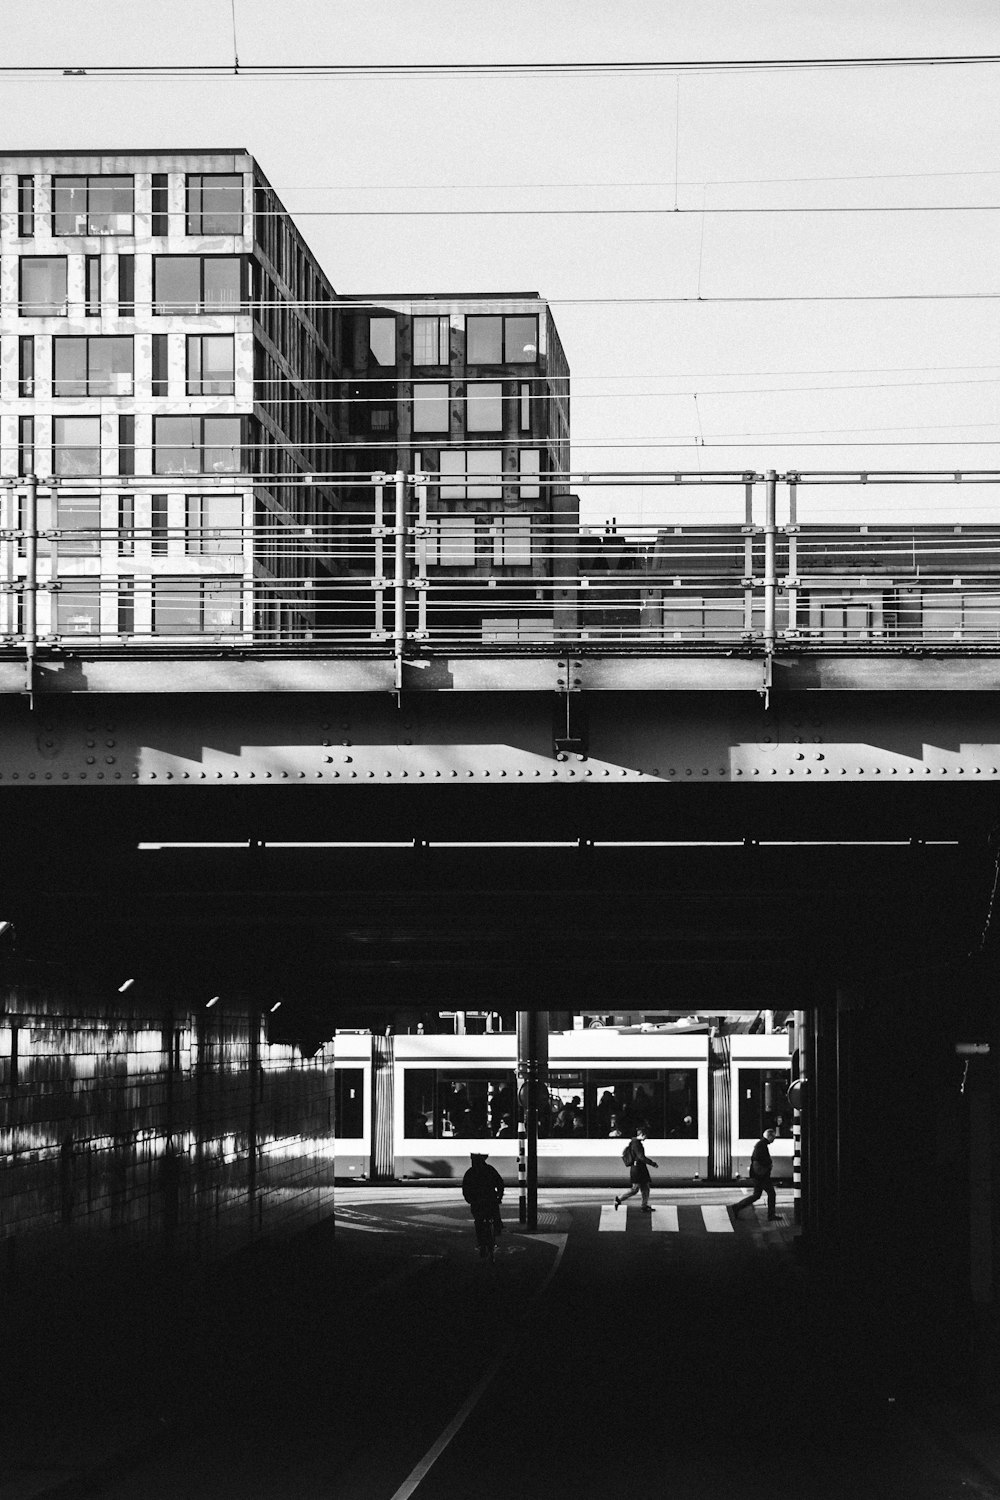 Fotografía en escala de grises del puente del tren